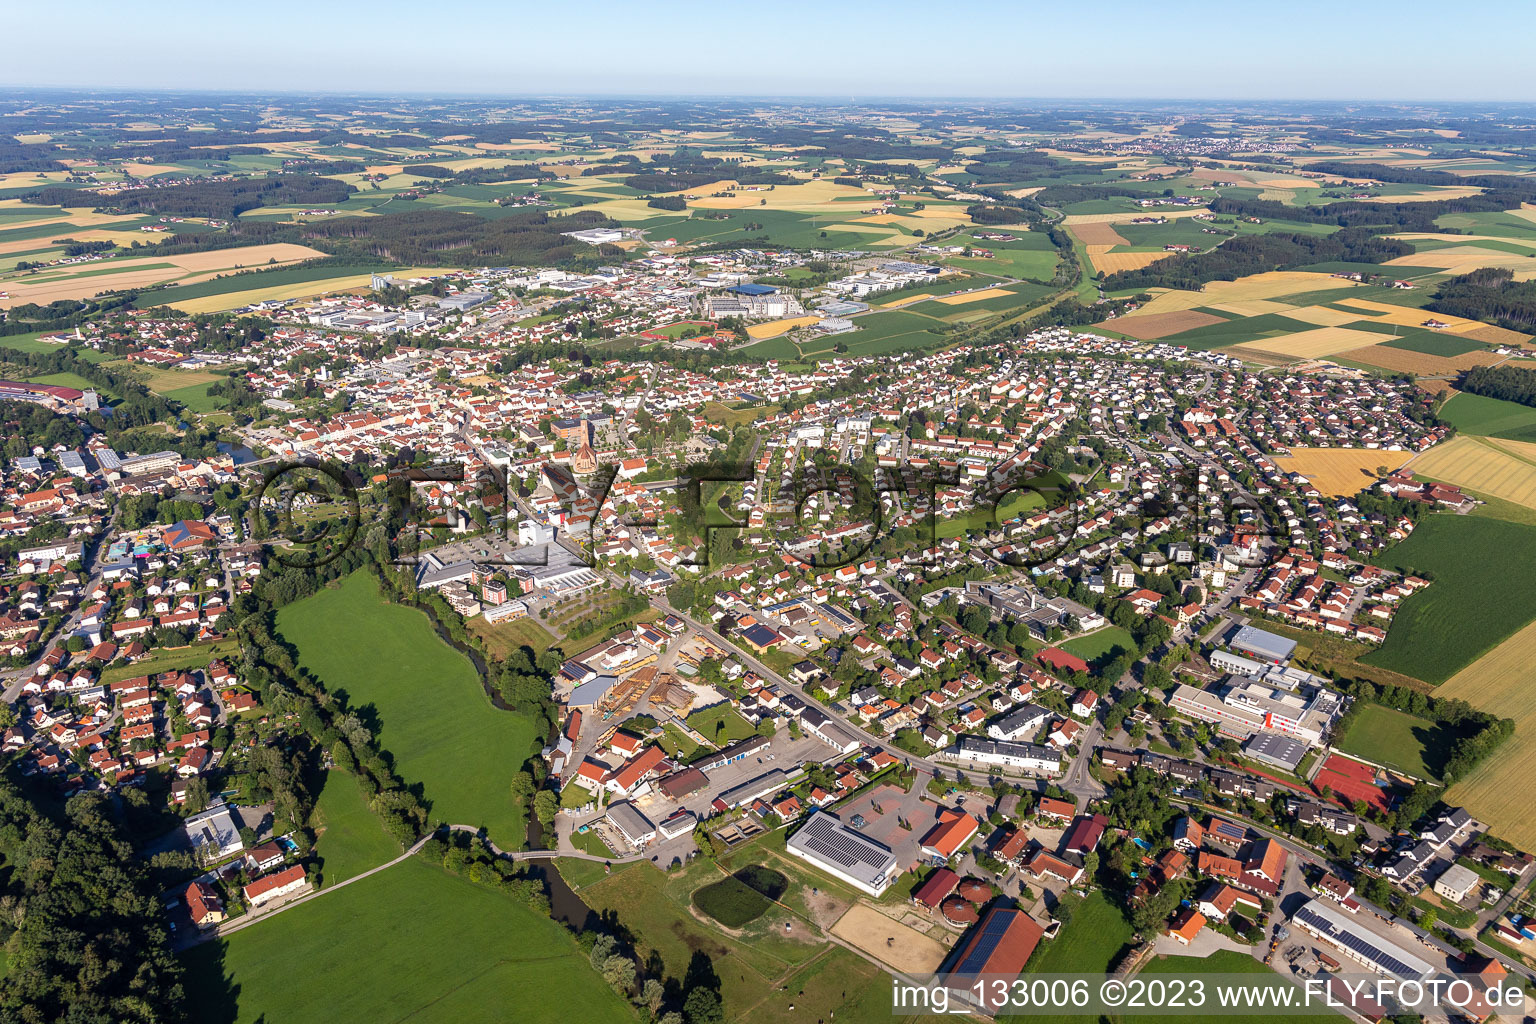 Luftbild von Vilsbiburg im Bundesland Bayern, Deutschland